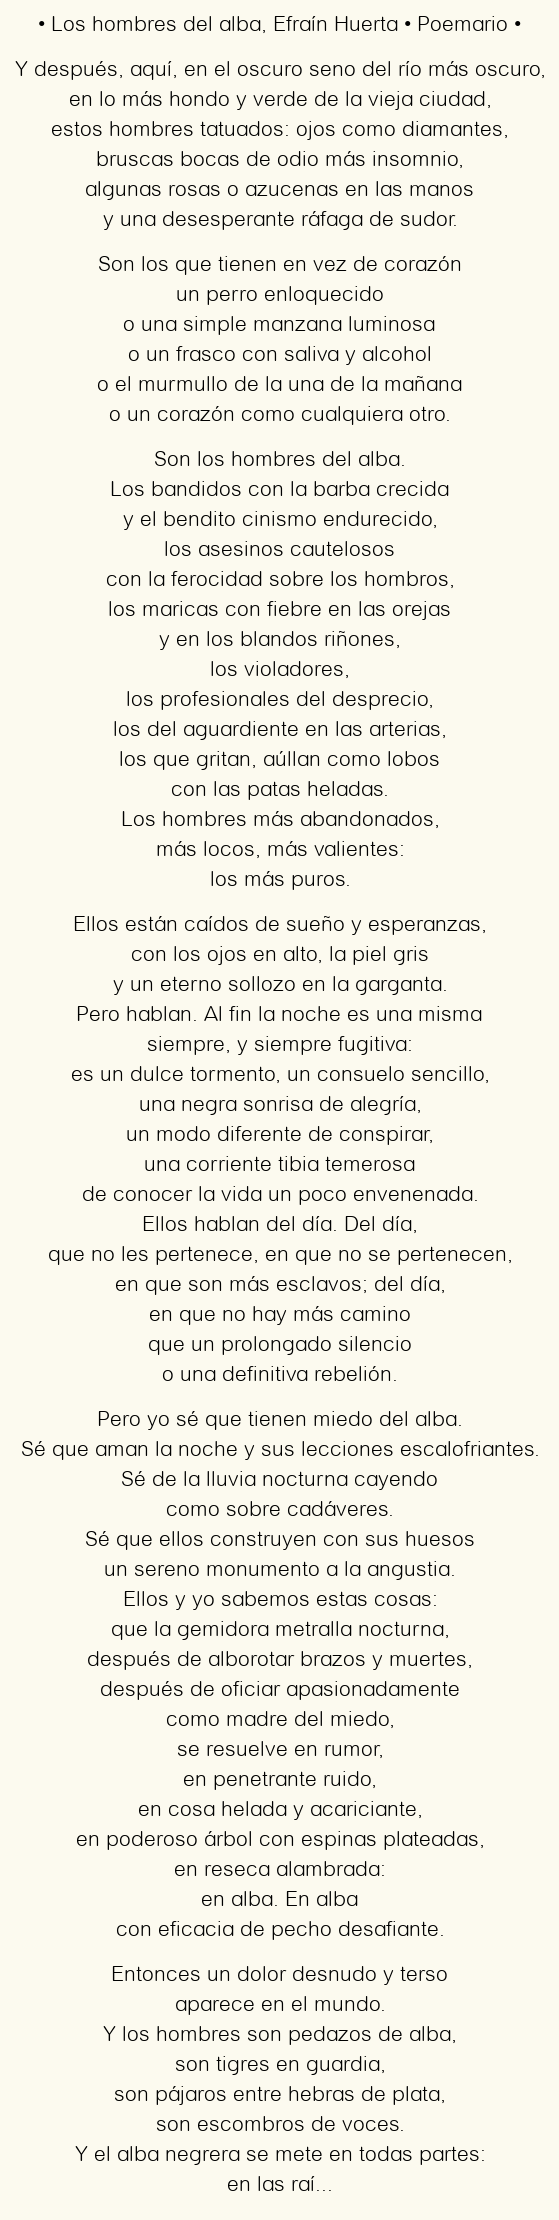 Imagen con el poema Los hombres del alba, por Efraín Huerta